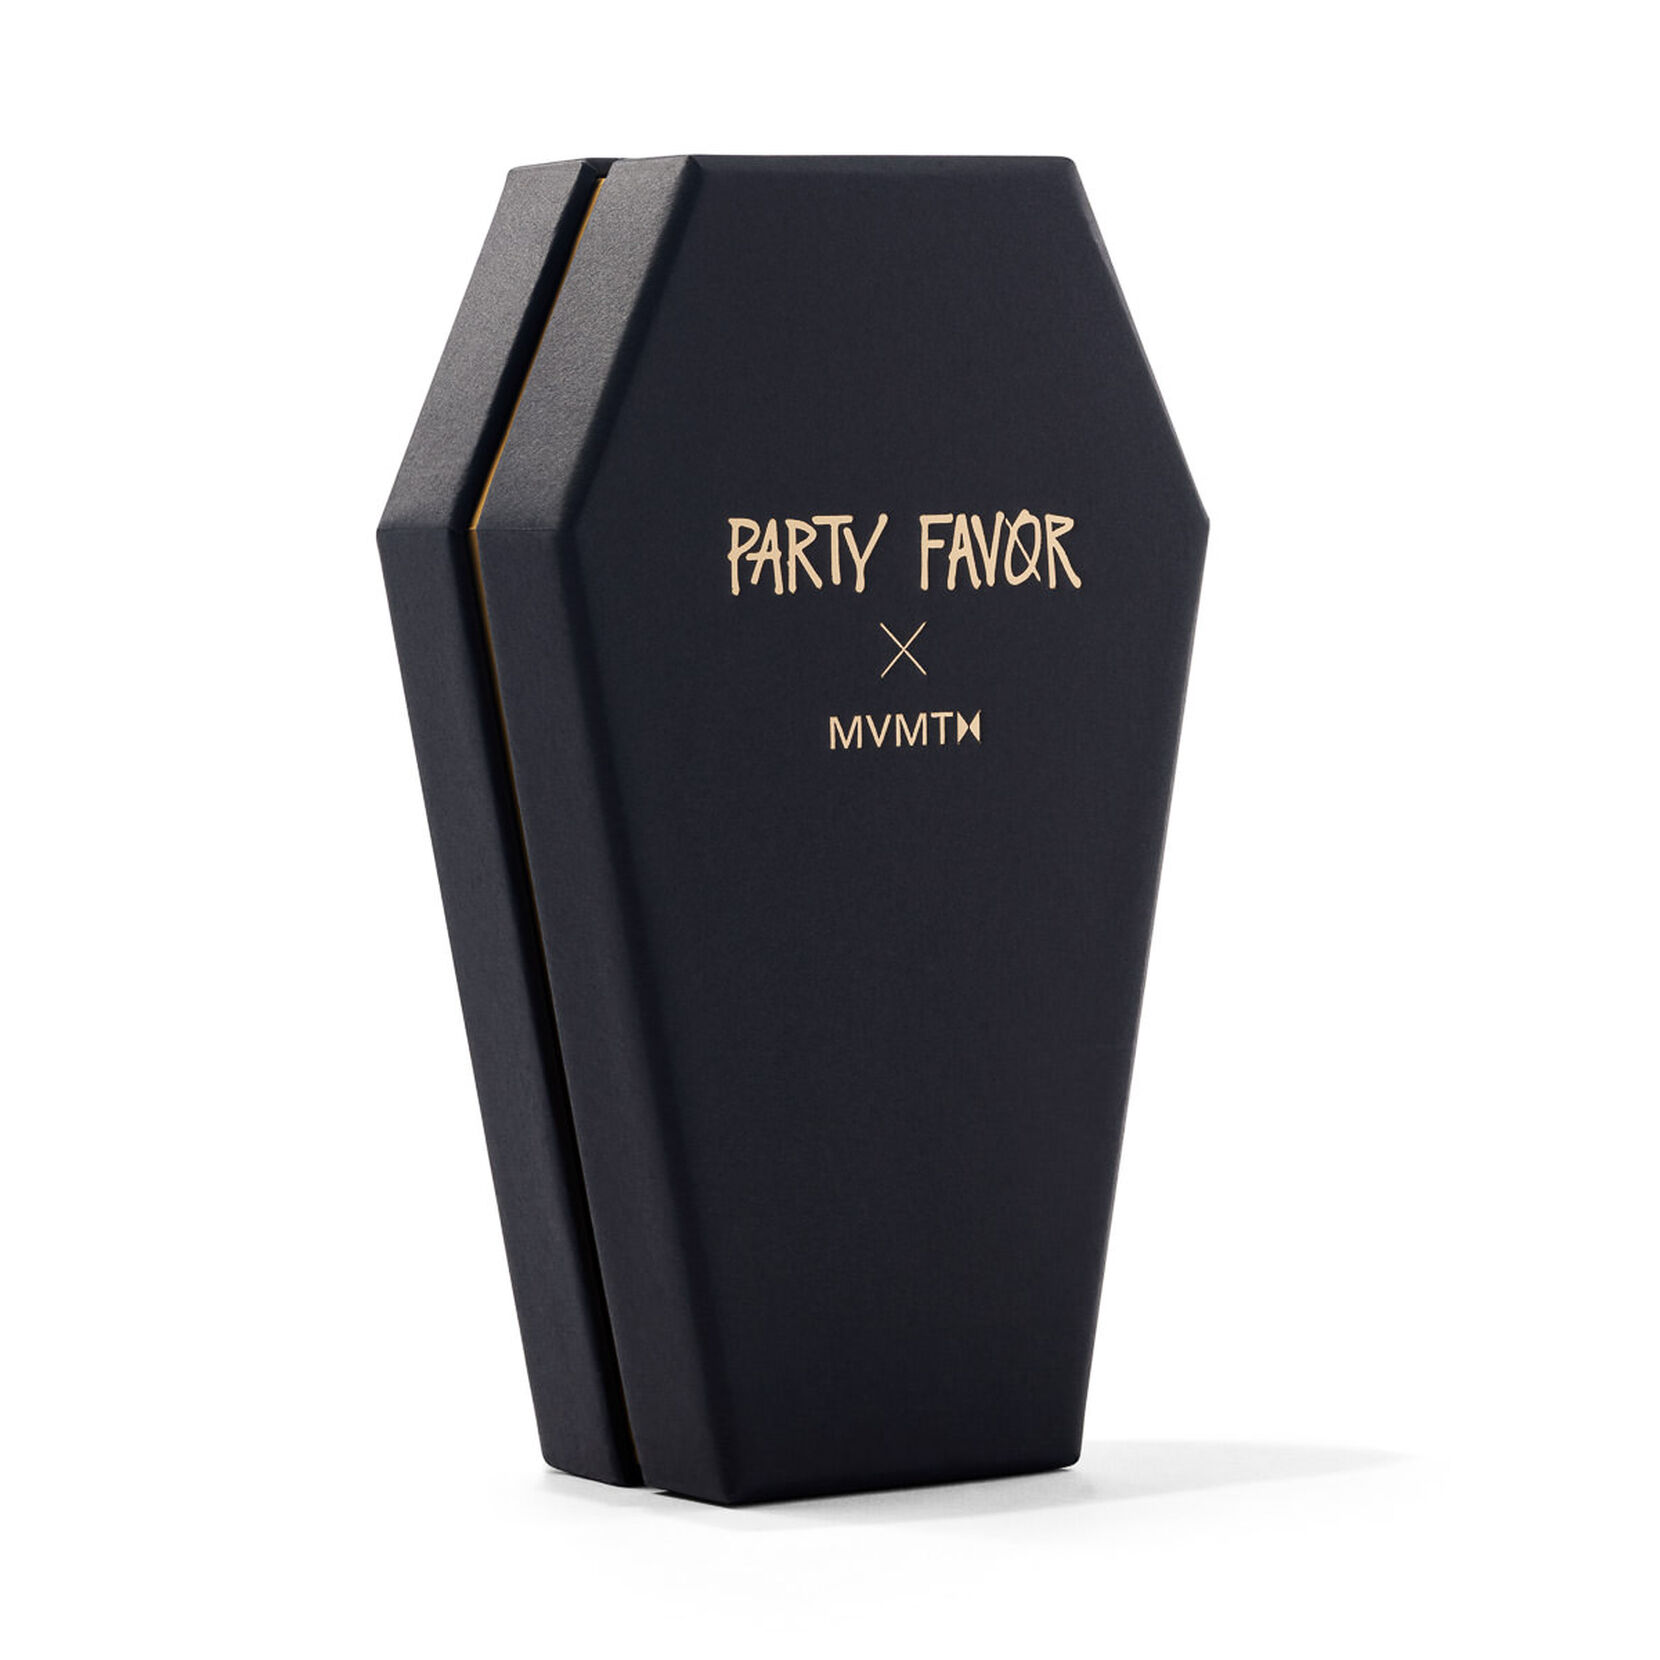 Party Favor Edition - Carbon Copy